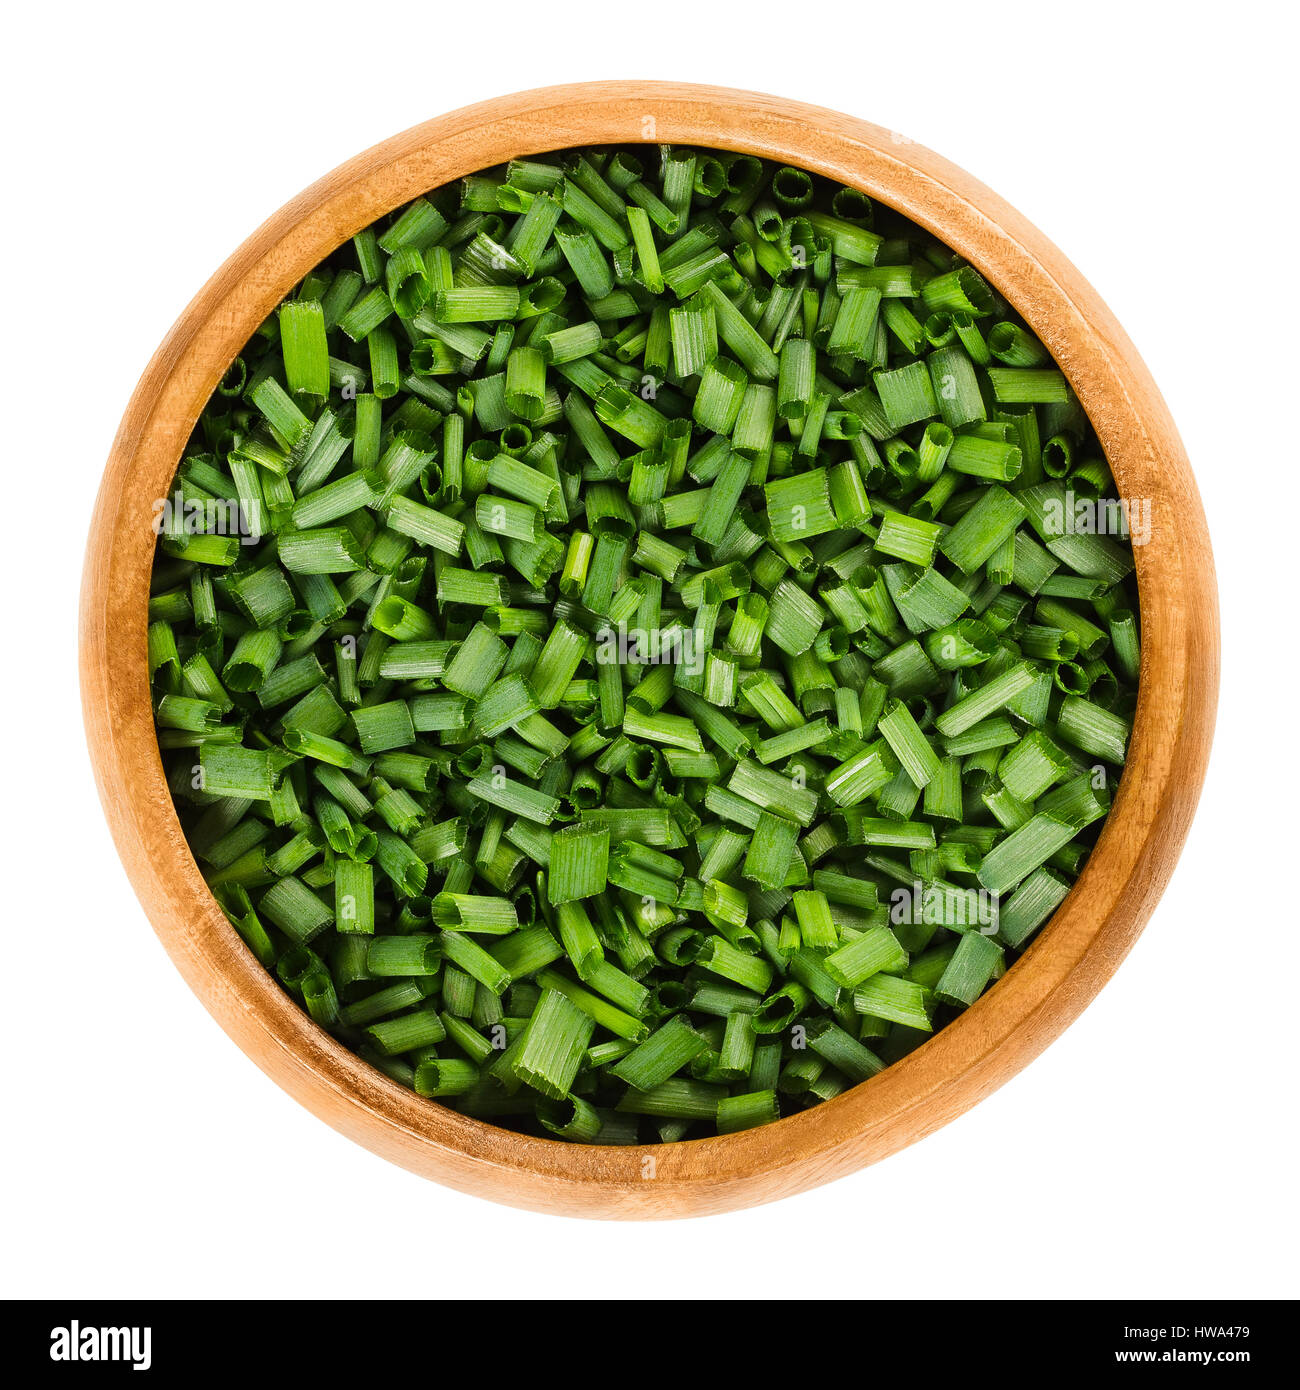 Erba cipollina tritata in ciotola di legno. Fresco e verde di erbe commestibili di Allium schoenoprasum, utilizzato come ingrediente per il pesce, patate e zuppe. Foto Stock